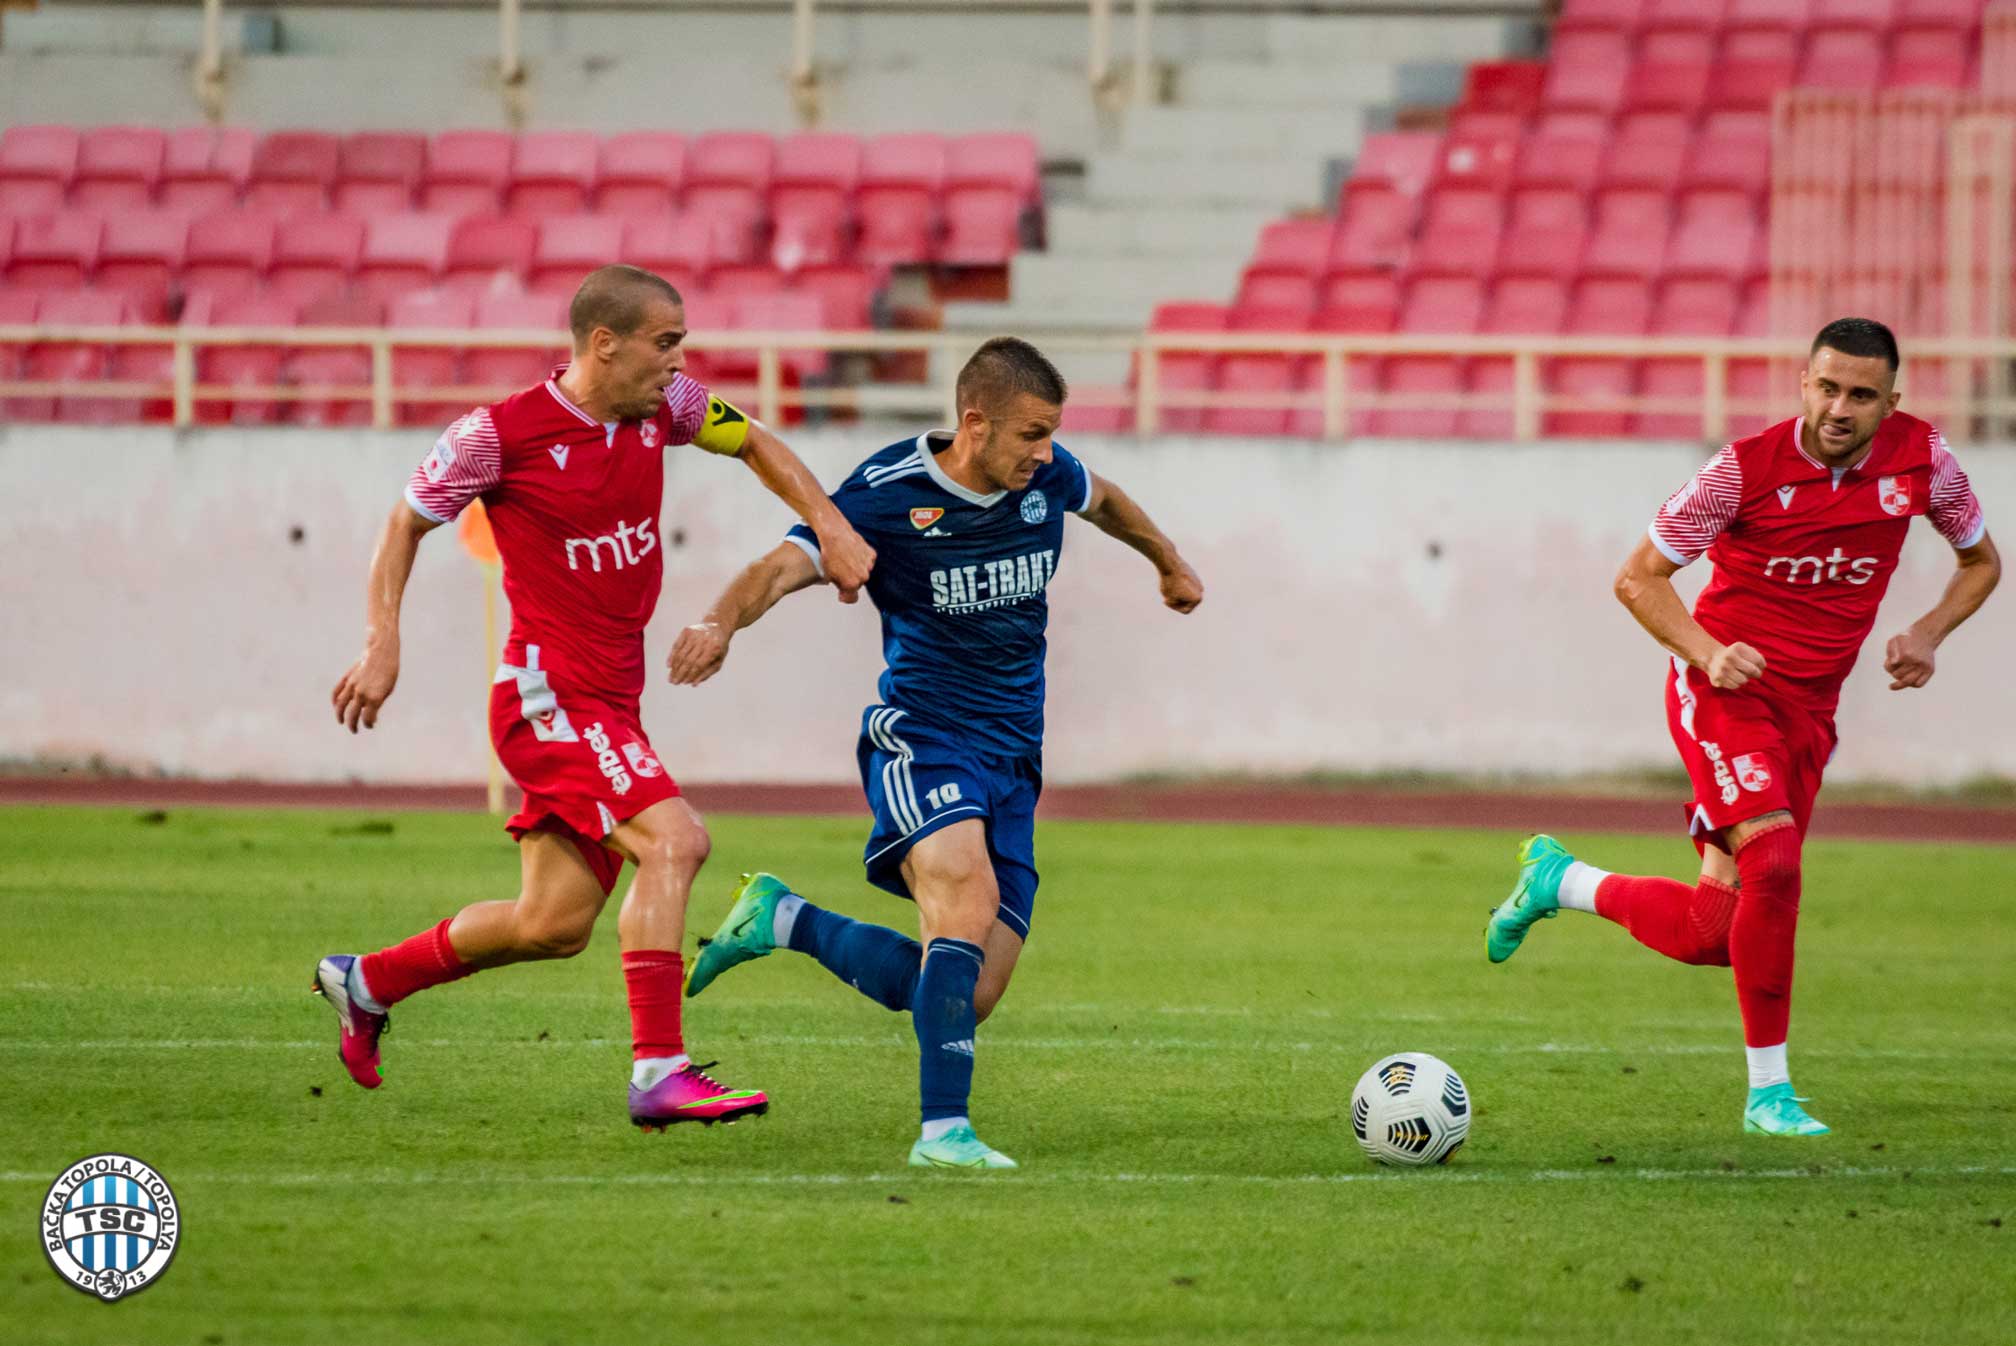 FK Radnički - FK TSC 1:2 (09.08.2021) Highlights 